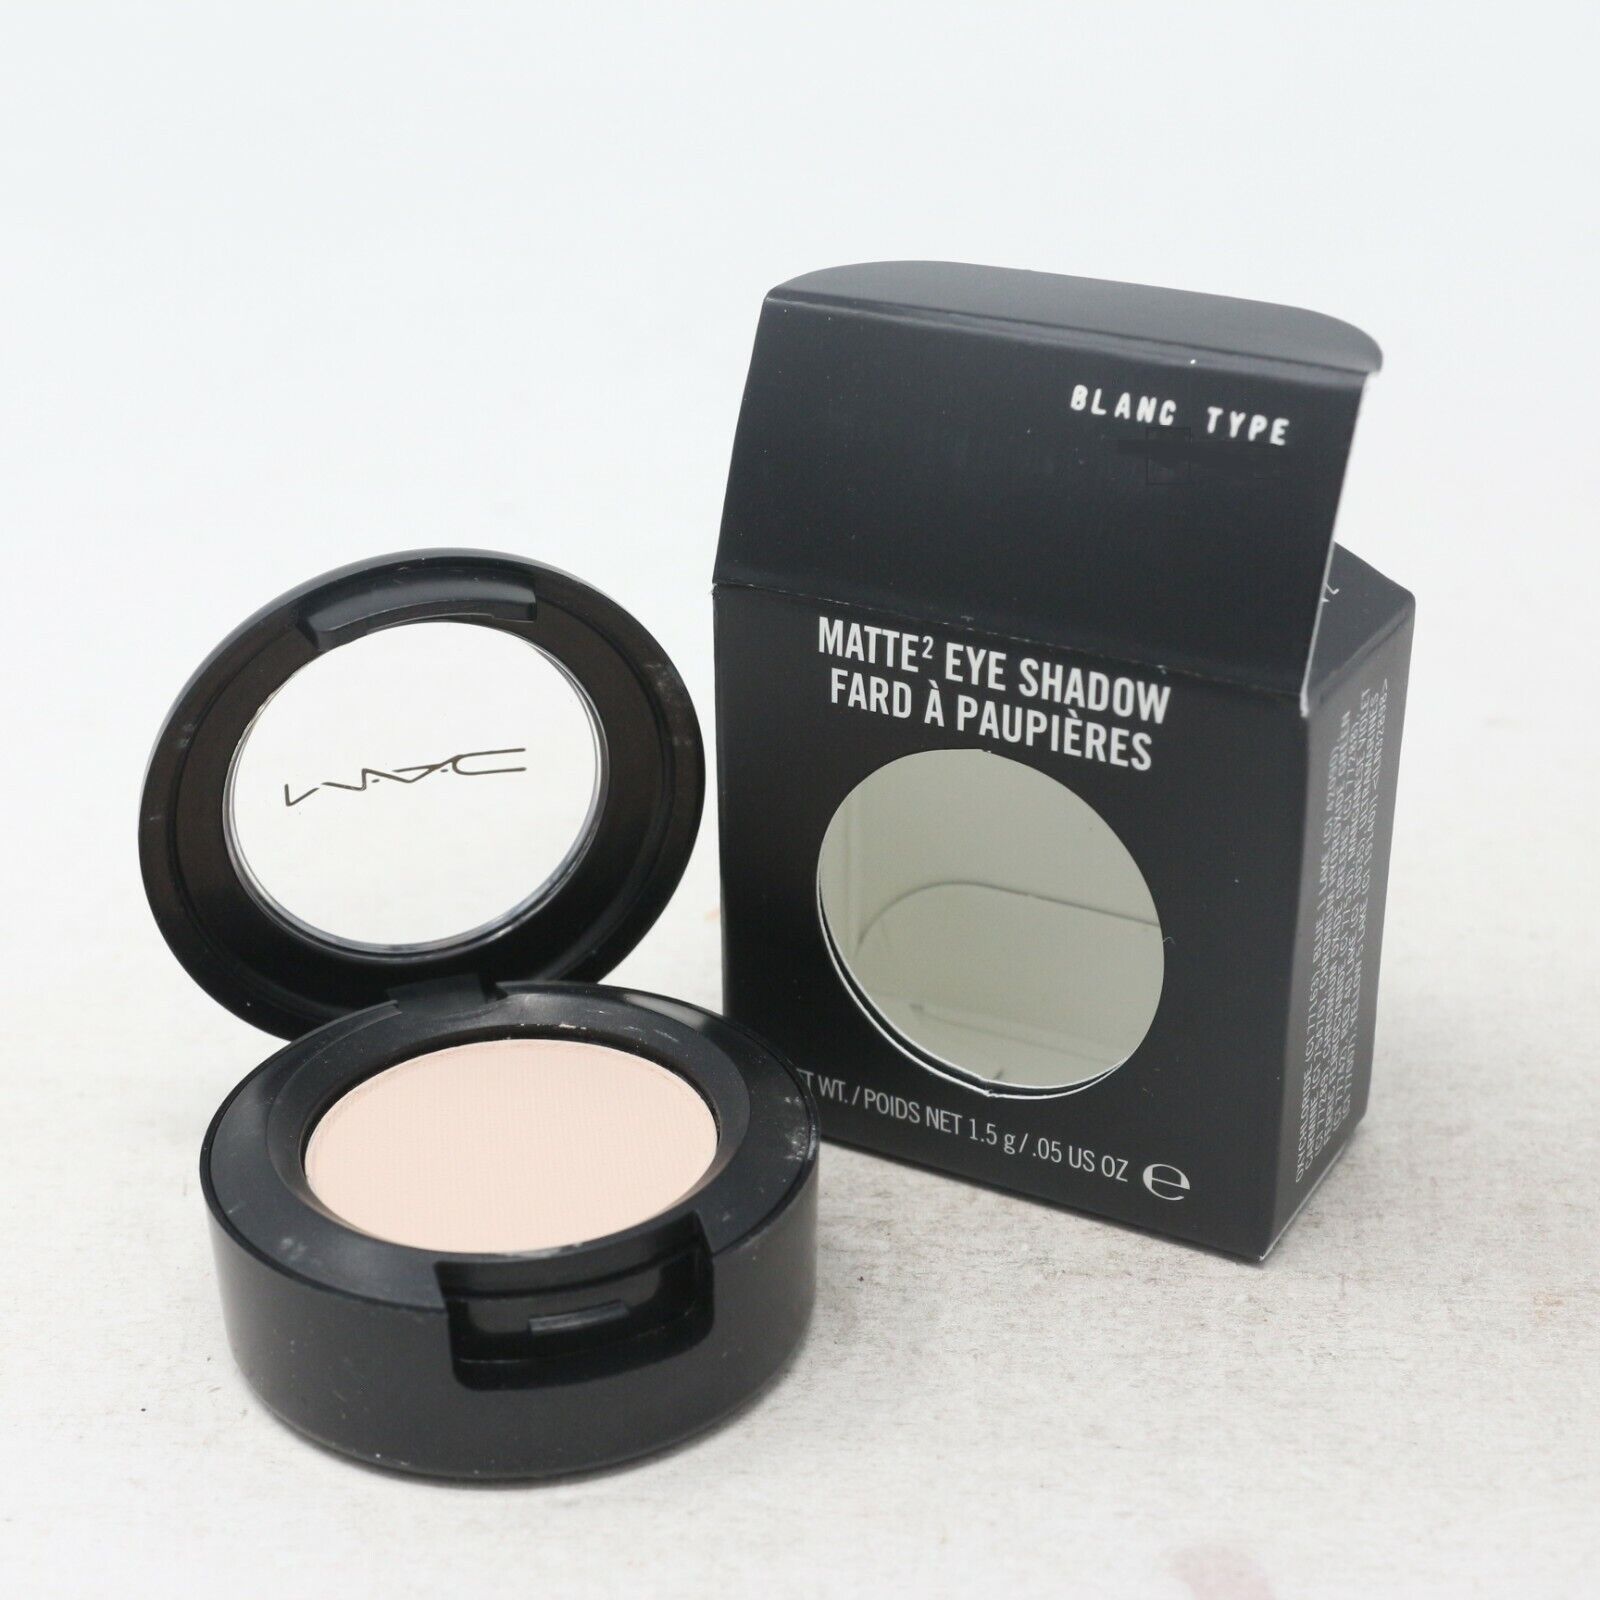 MAC Eye Shadow in Blanc Type - NIB - Rare Guaranteed Authentic